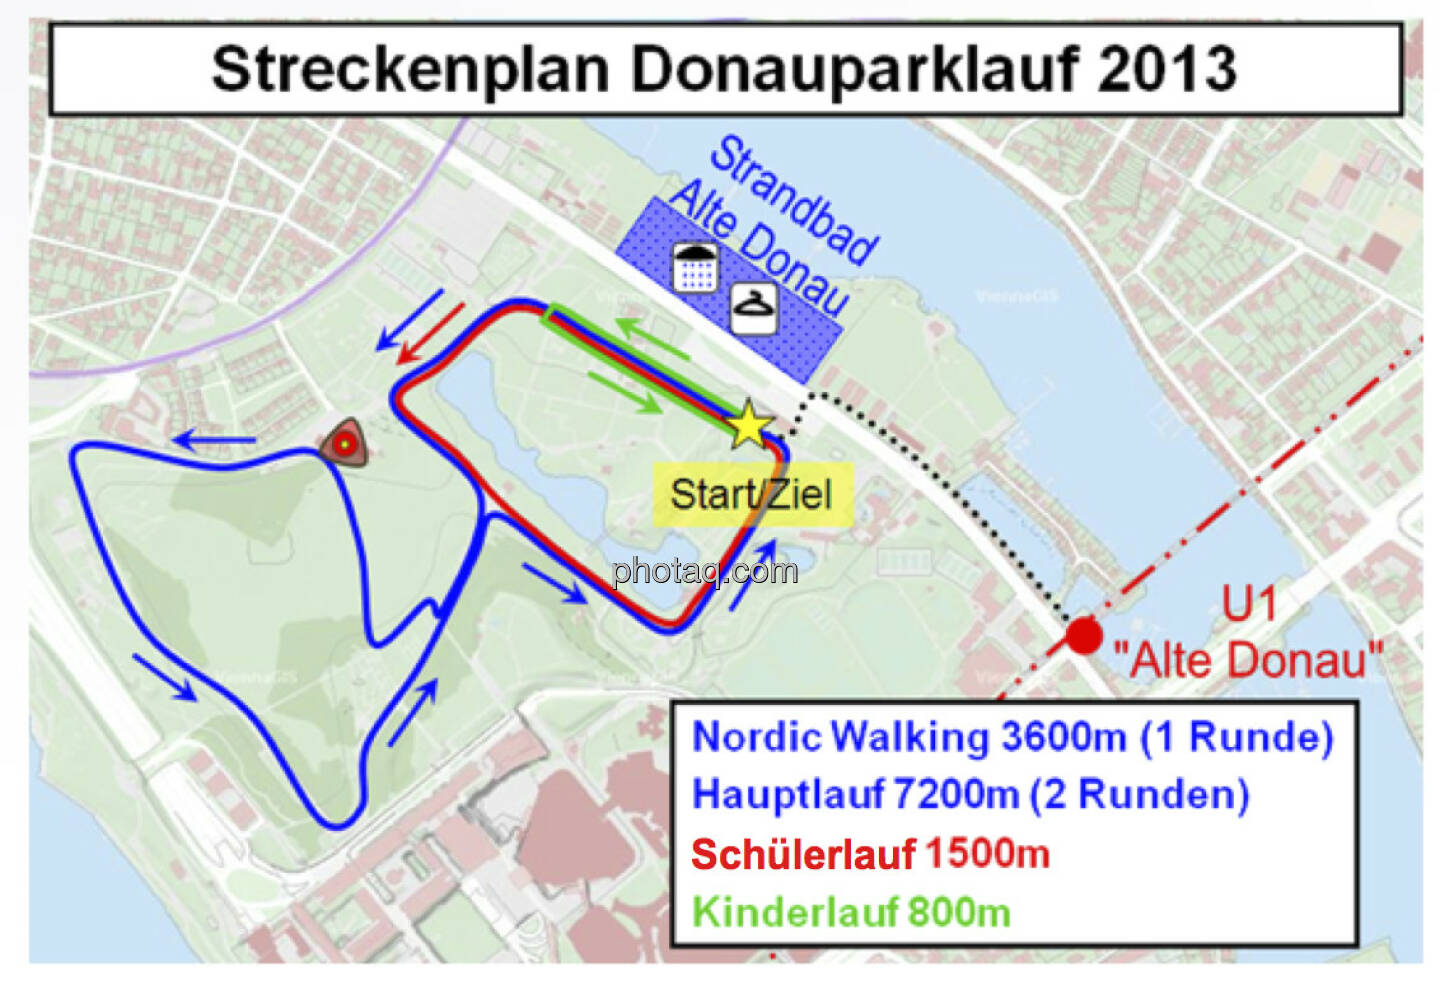 Streckenplan Donauparklauf 2013, siehe auch http://www.donauparklauf.at